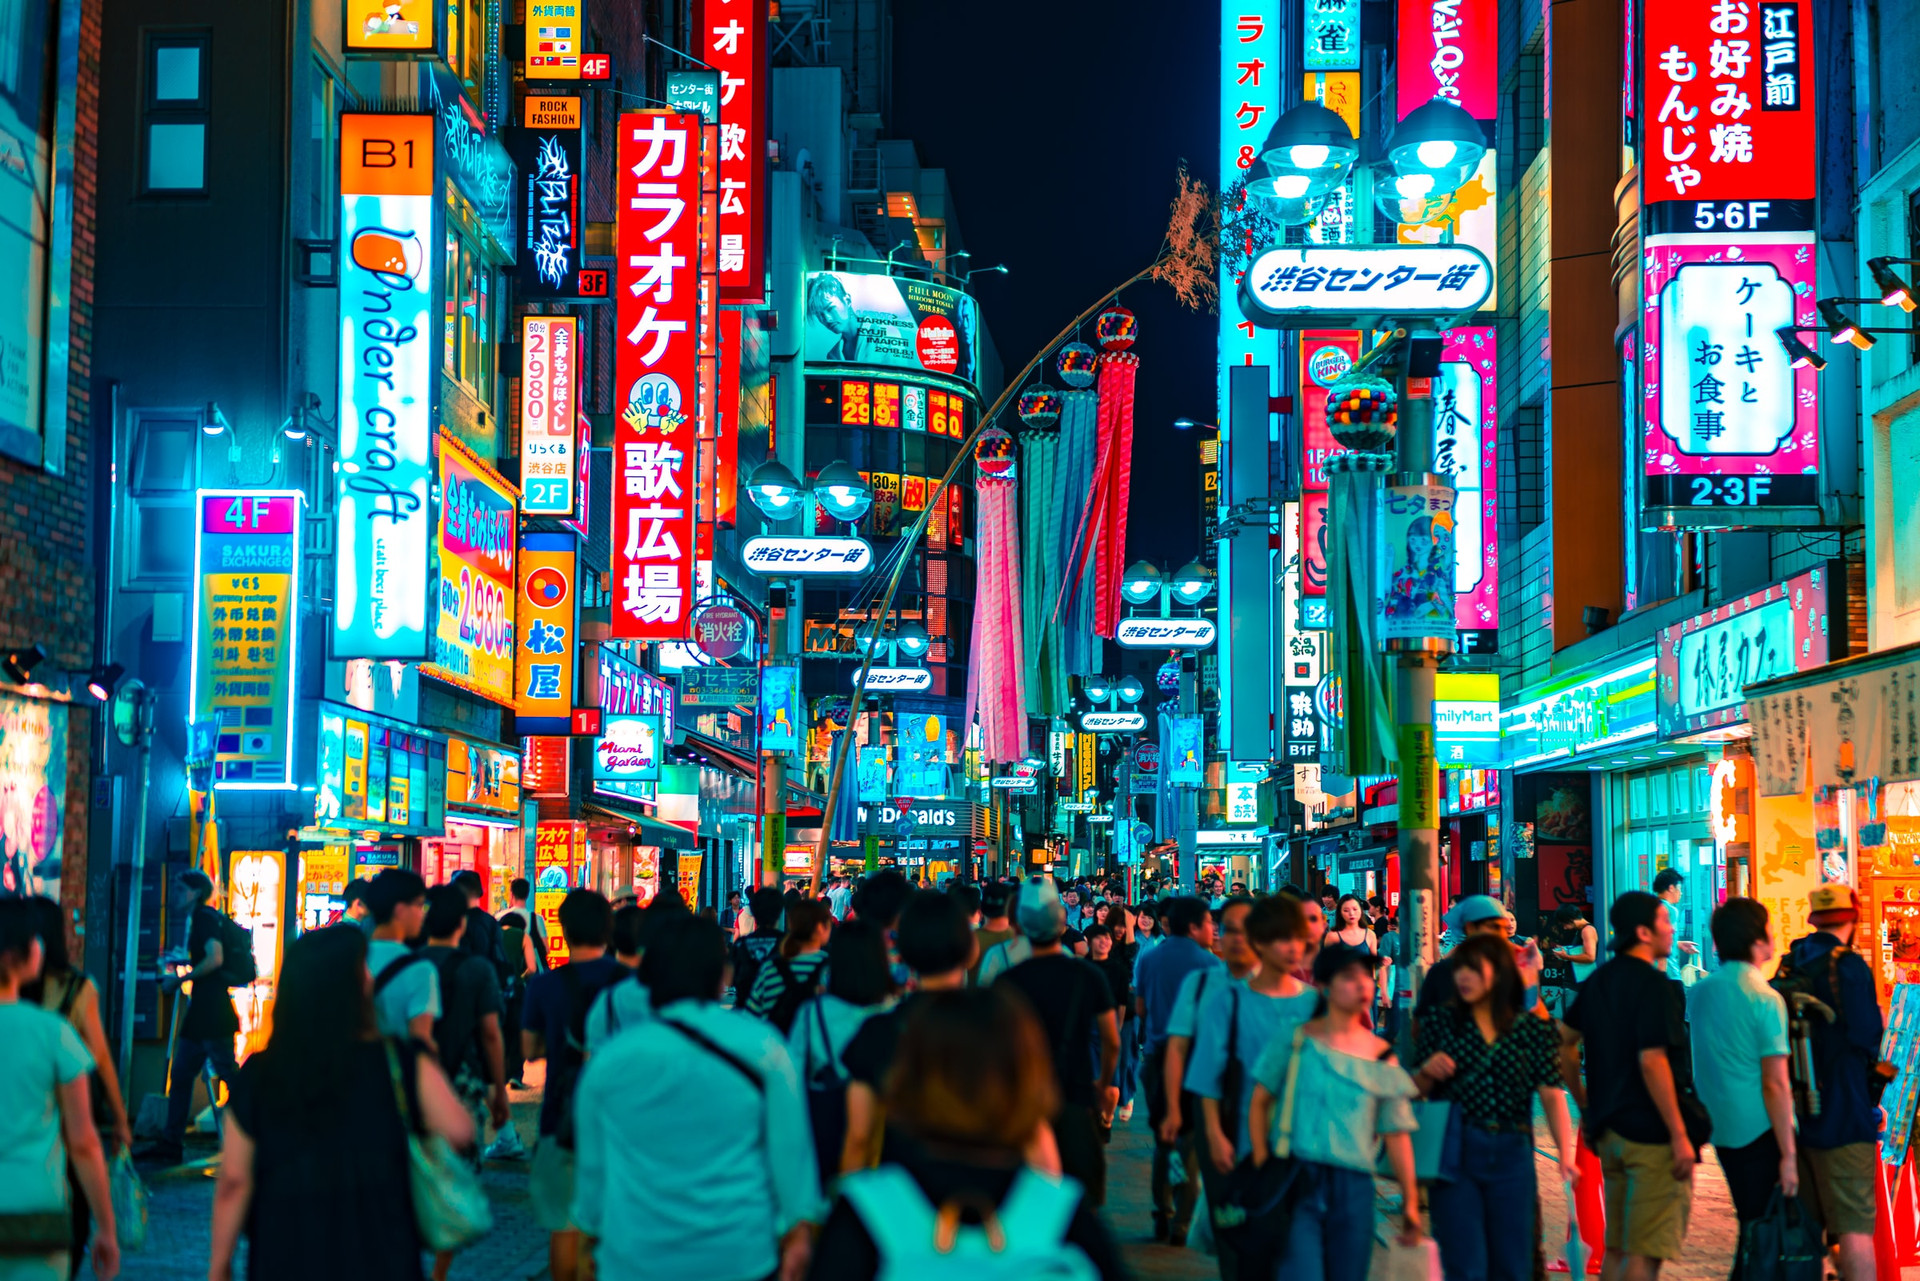 Con đường Shibuya nổi tiếng chật kín người đi lại ở thủ đô Tokyo. Ảnh: Unsplash.